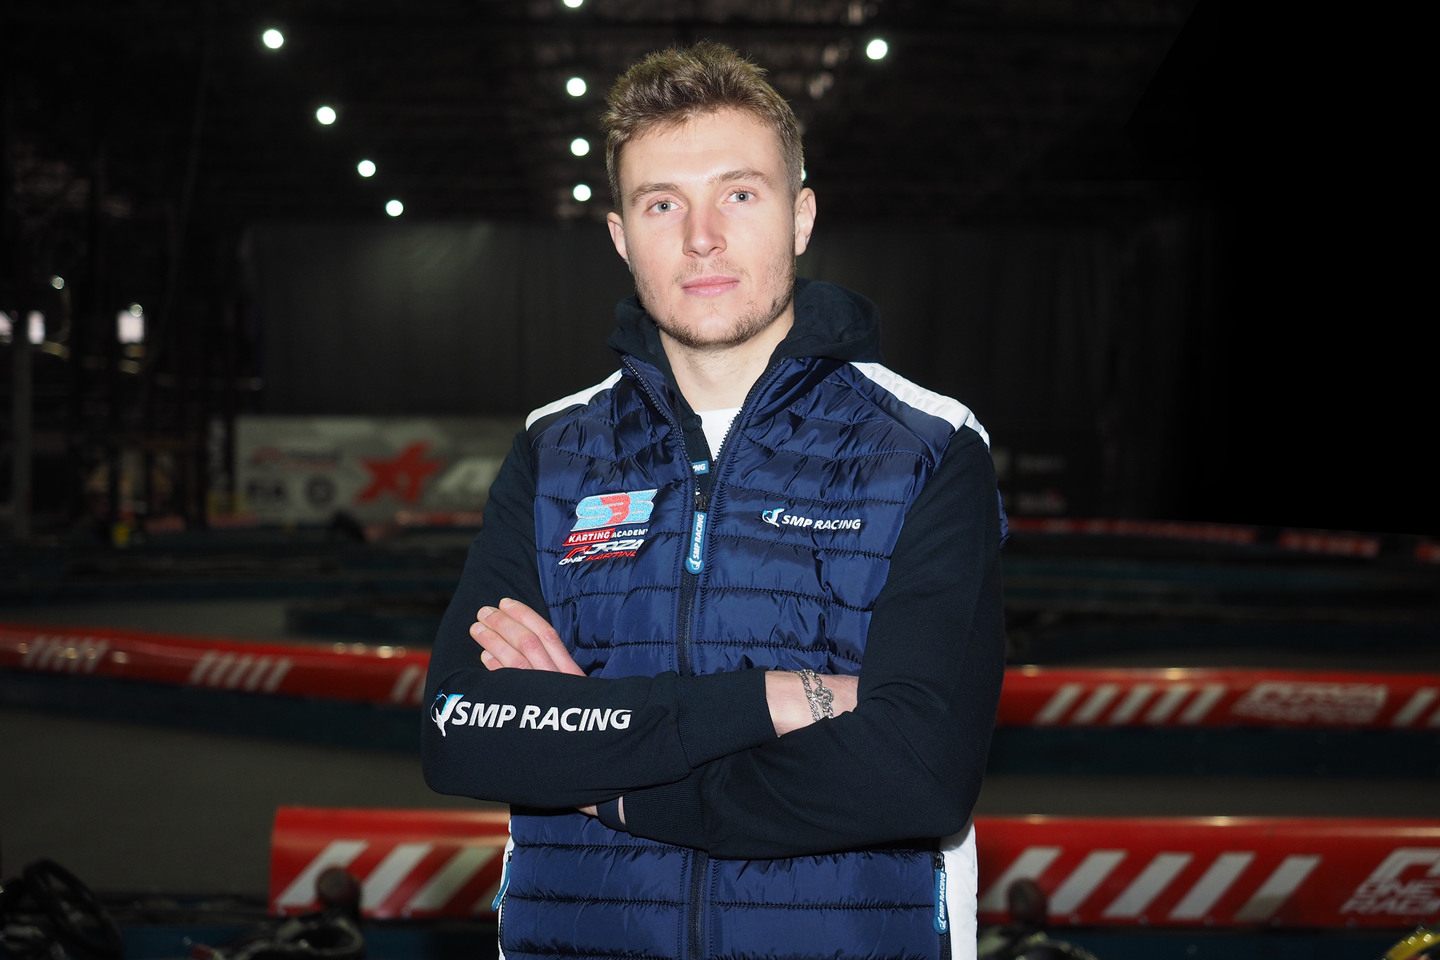 Сергей Сироткин в Академии картинга SMP Racing, в которой он является наставником © SMP Racing